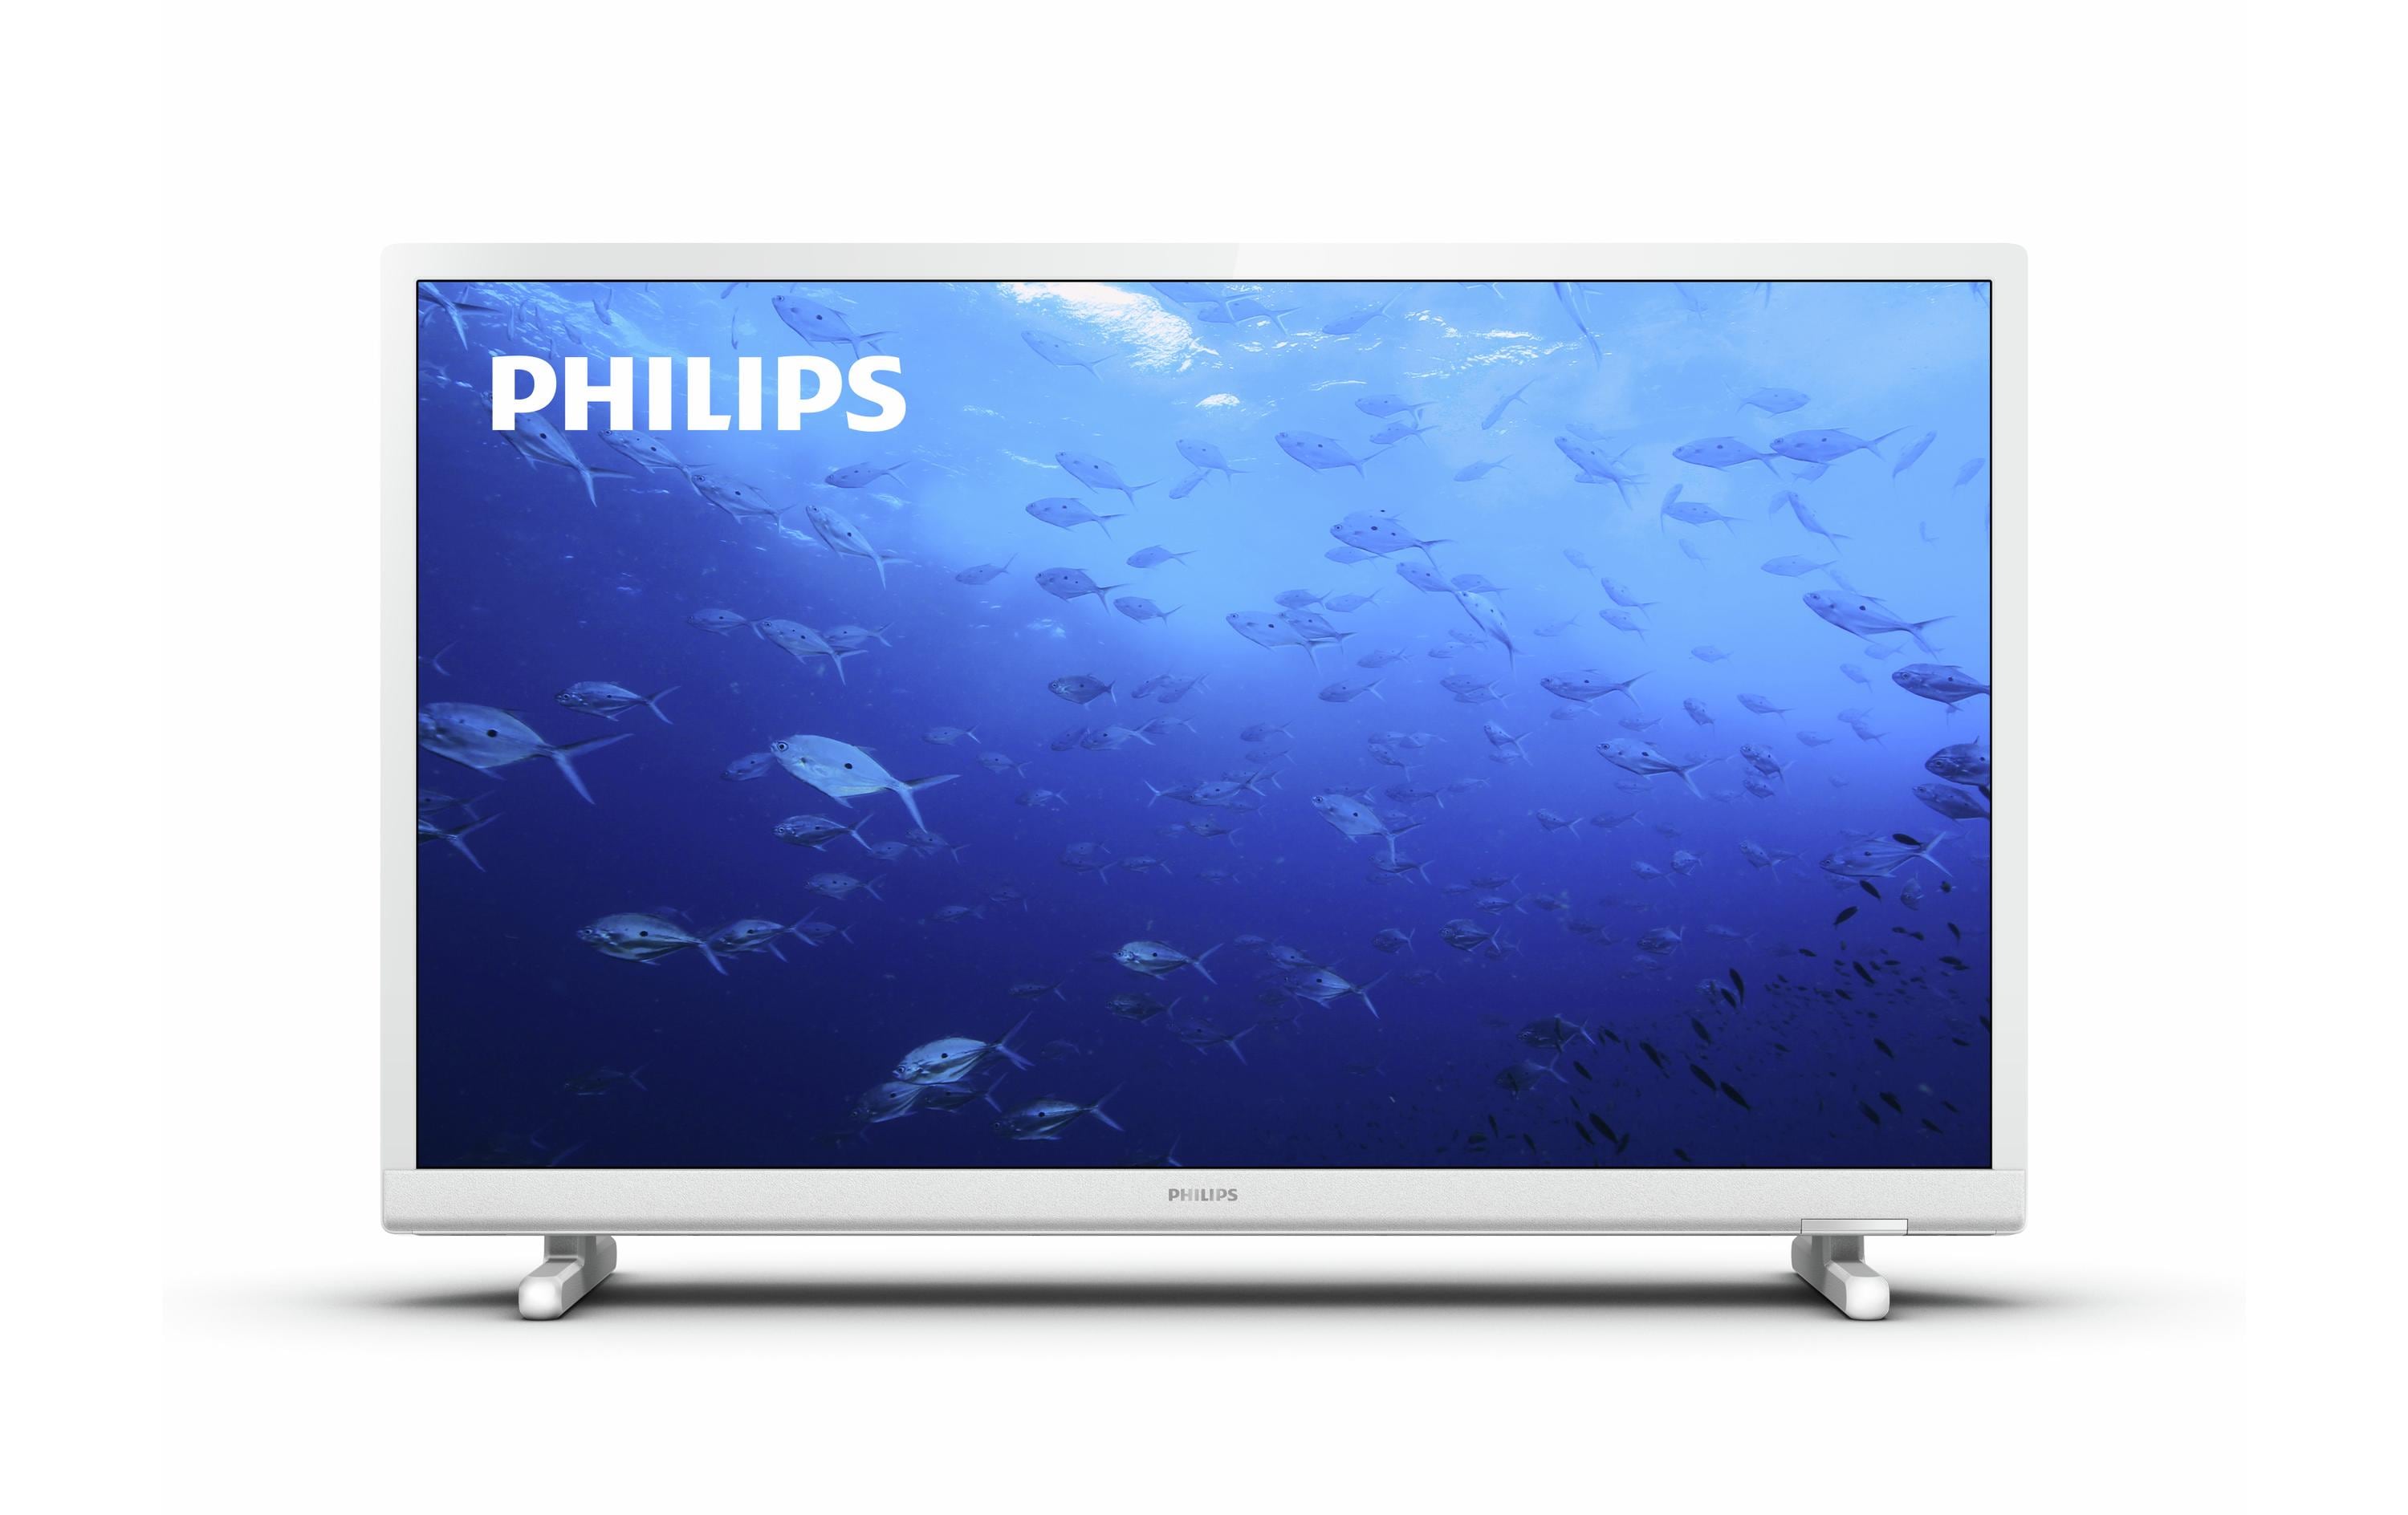 Philips TV 24PHS5537/12 24, 1366 x 768 (WXGA), LED-LCD